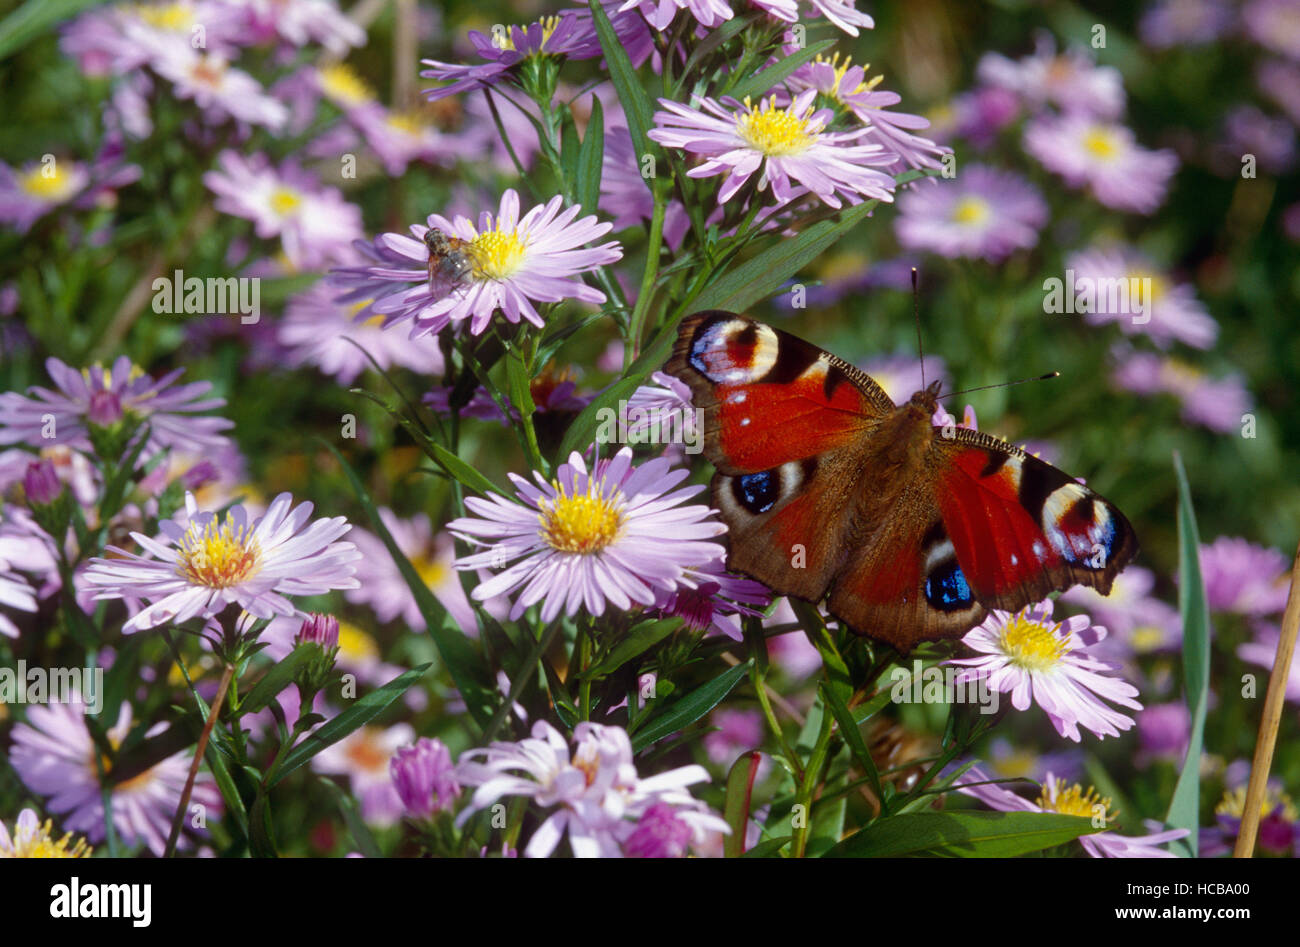 Papillon paon européen (Inachis io) dans une prairie avec des fleurs Marguerites Michaelmas européenne (Aster amellus L.) Banque D'Images